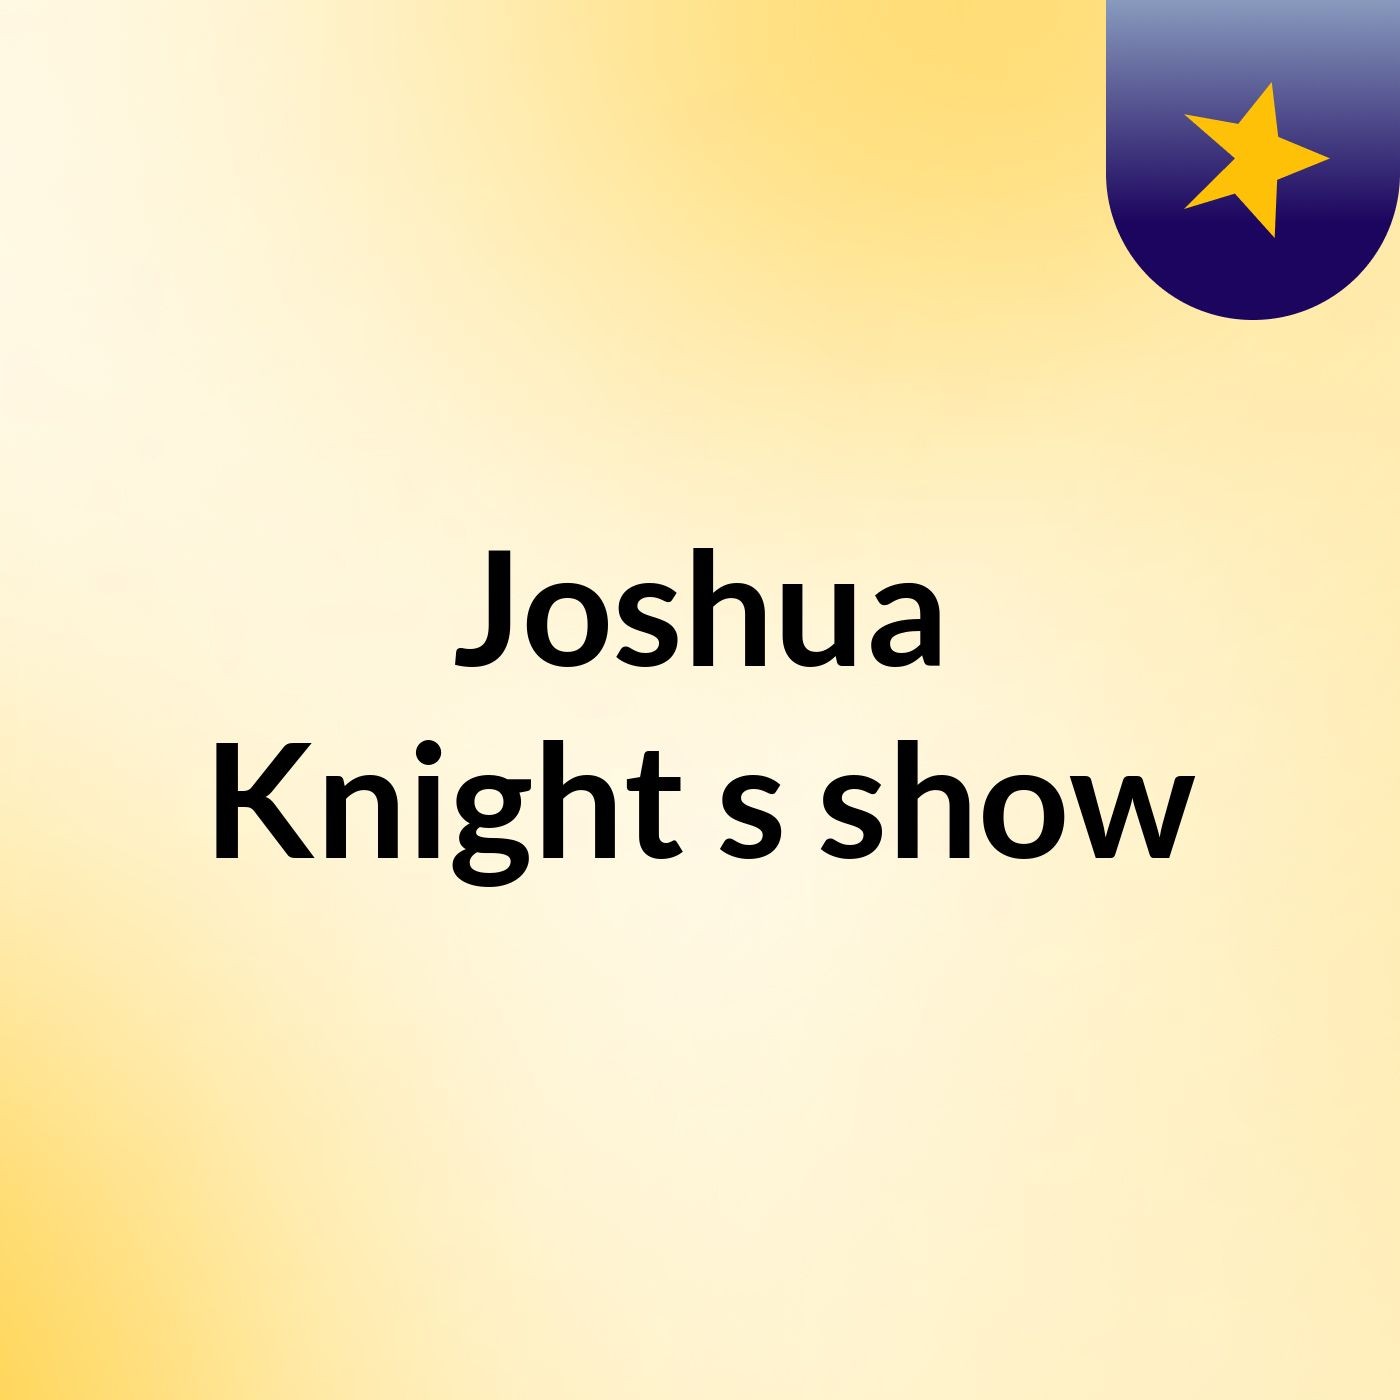 Joshua Knight's show